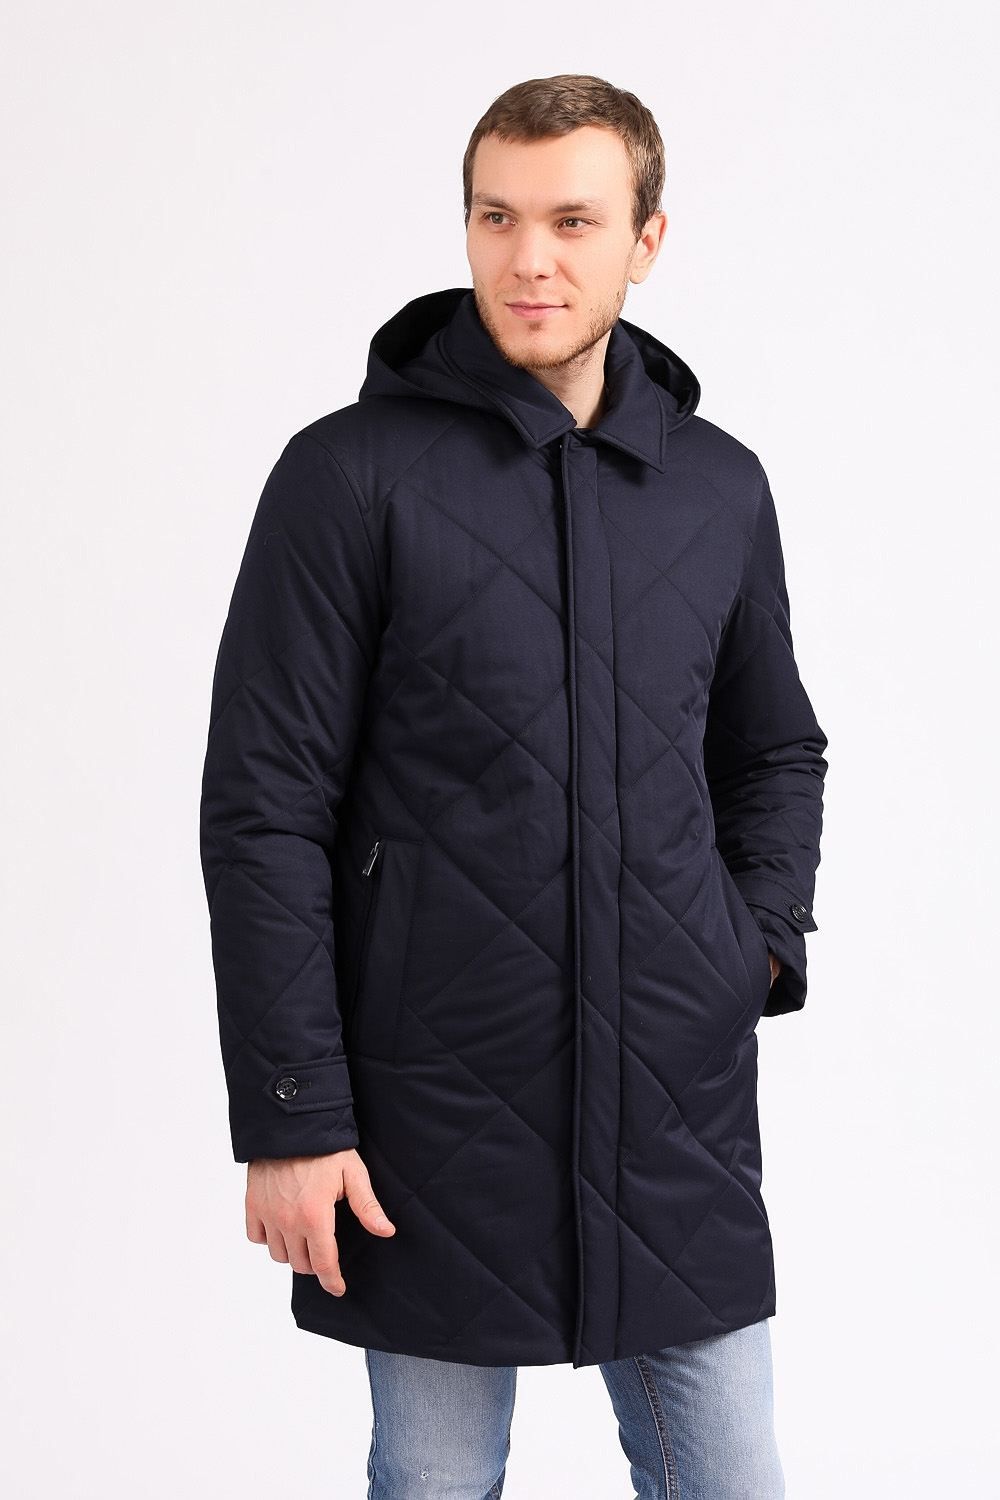 Зимняя куртка темно-синяя на молнии прямая 50022